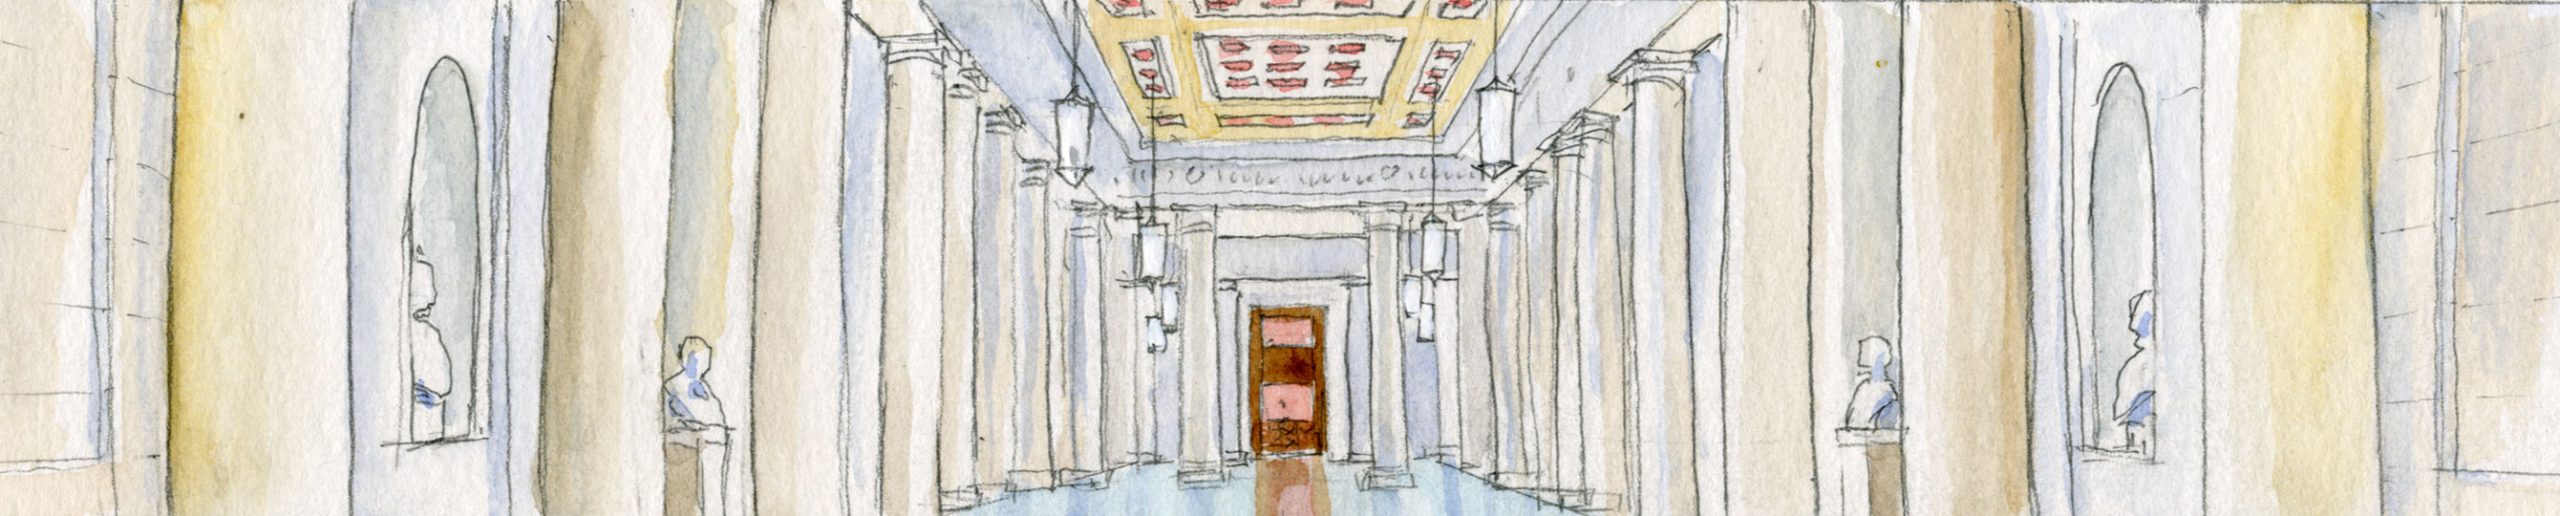 boceto de un largo pasillo vacío, flanqueado a ambos lados por columnas y estatuas de mármol